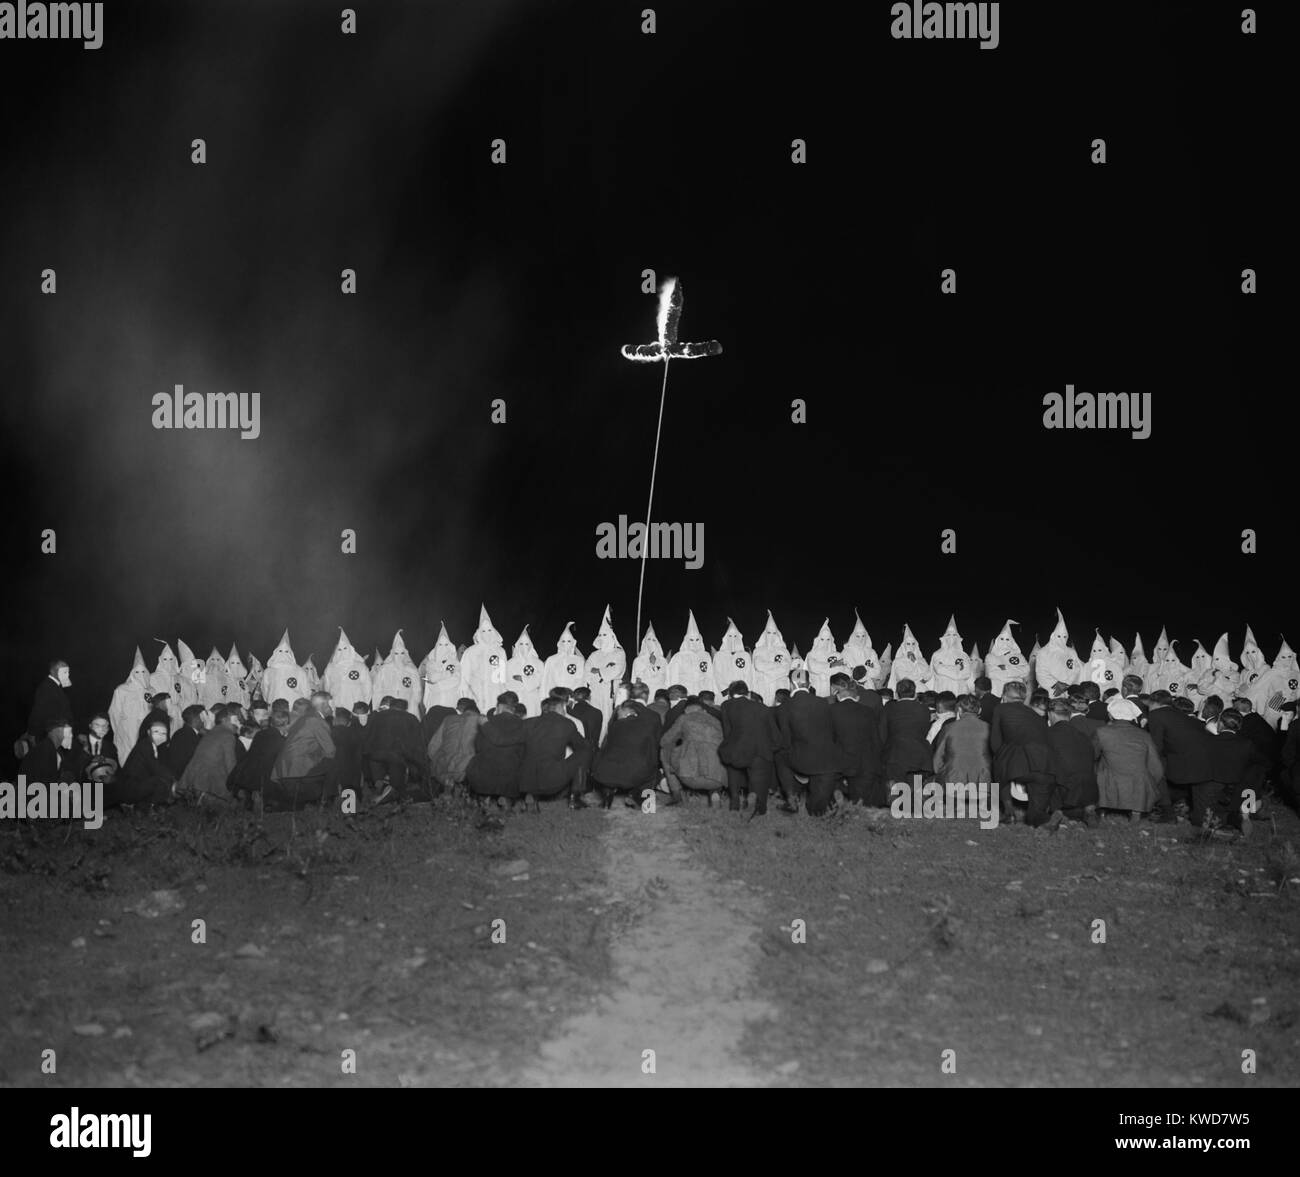 Ku Klux Klan sammeln mit voll bekleidet und mit kapuze Mitglieder und knieende Männer in Gesichtsmasken. Es ist eine brennende Kreuz an, was zu einer nächtlichen anfangszeremonie am 28. Juni 1922 wird angezeigt. Foto von nationalen Foto- und war wahrscheinlich innerhalb von 100 Meilen von Washington, D.C. (BSLOC 2015 16 173) Stockfoto